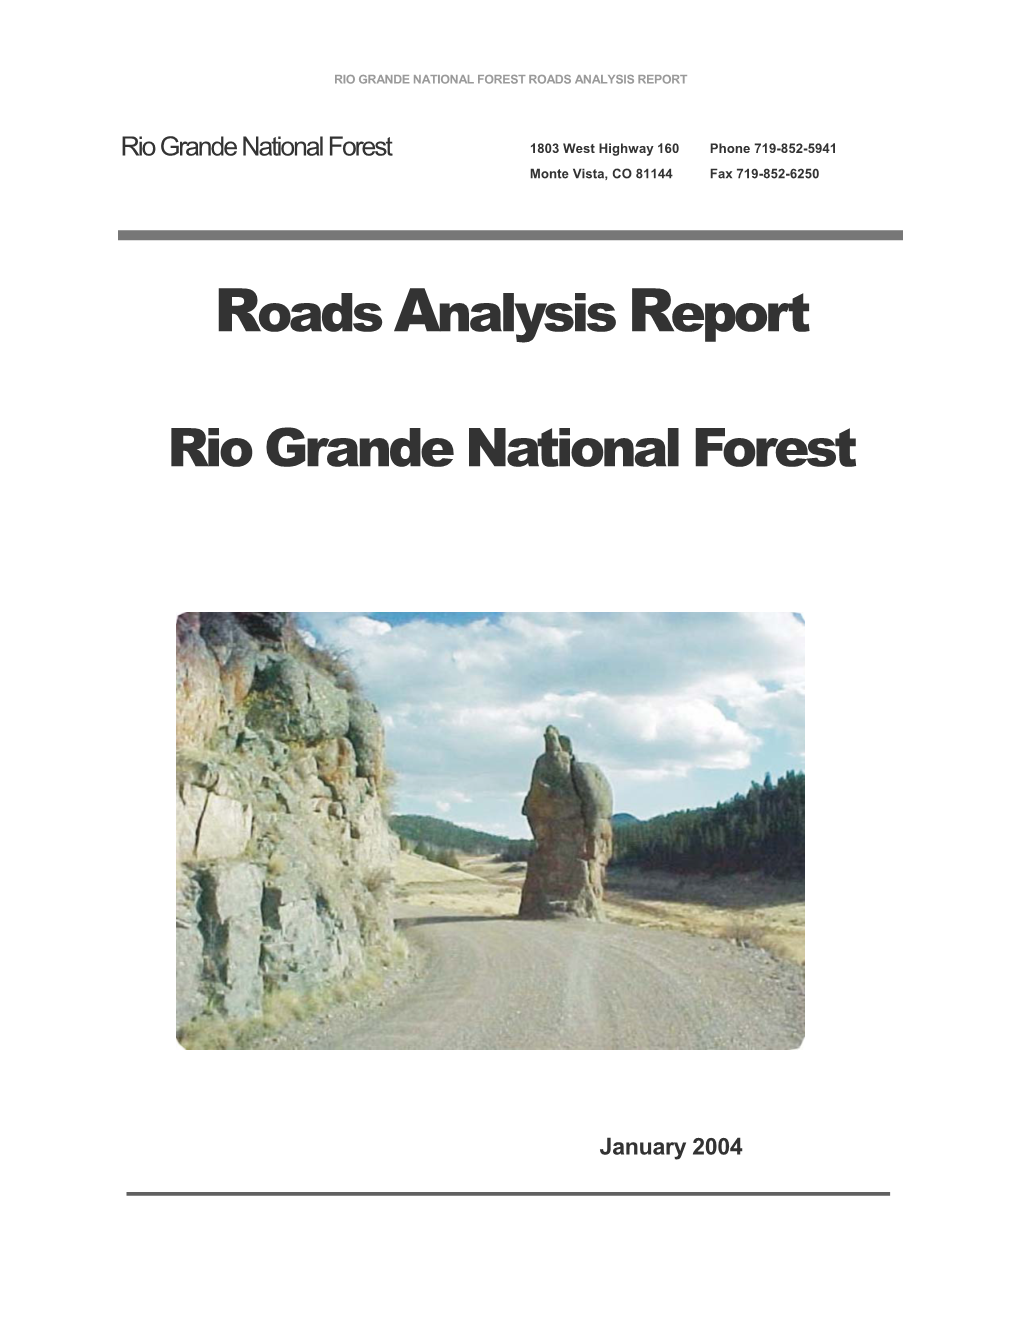 Roads Analysis Report